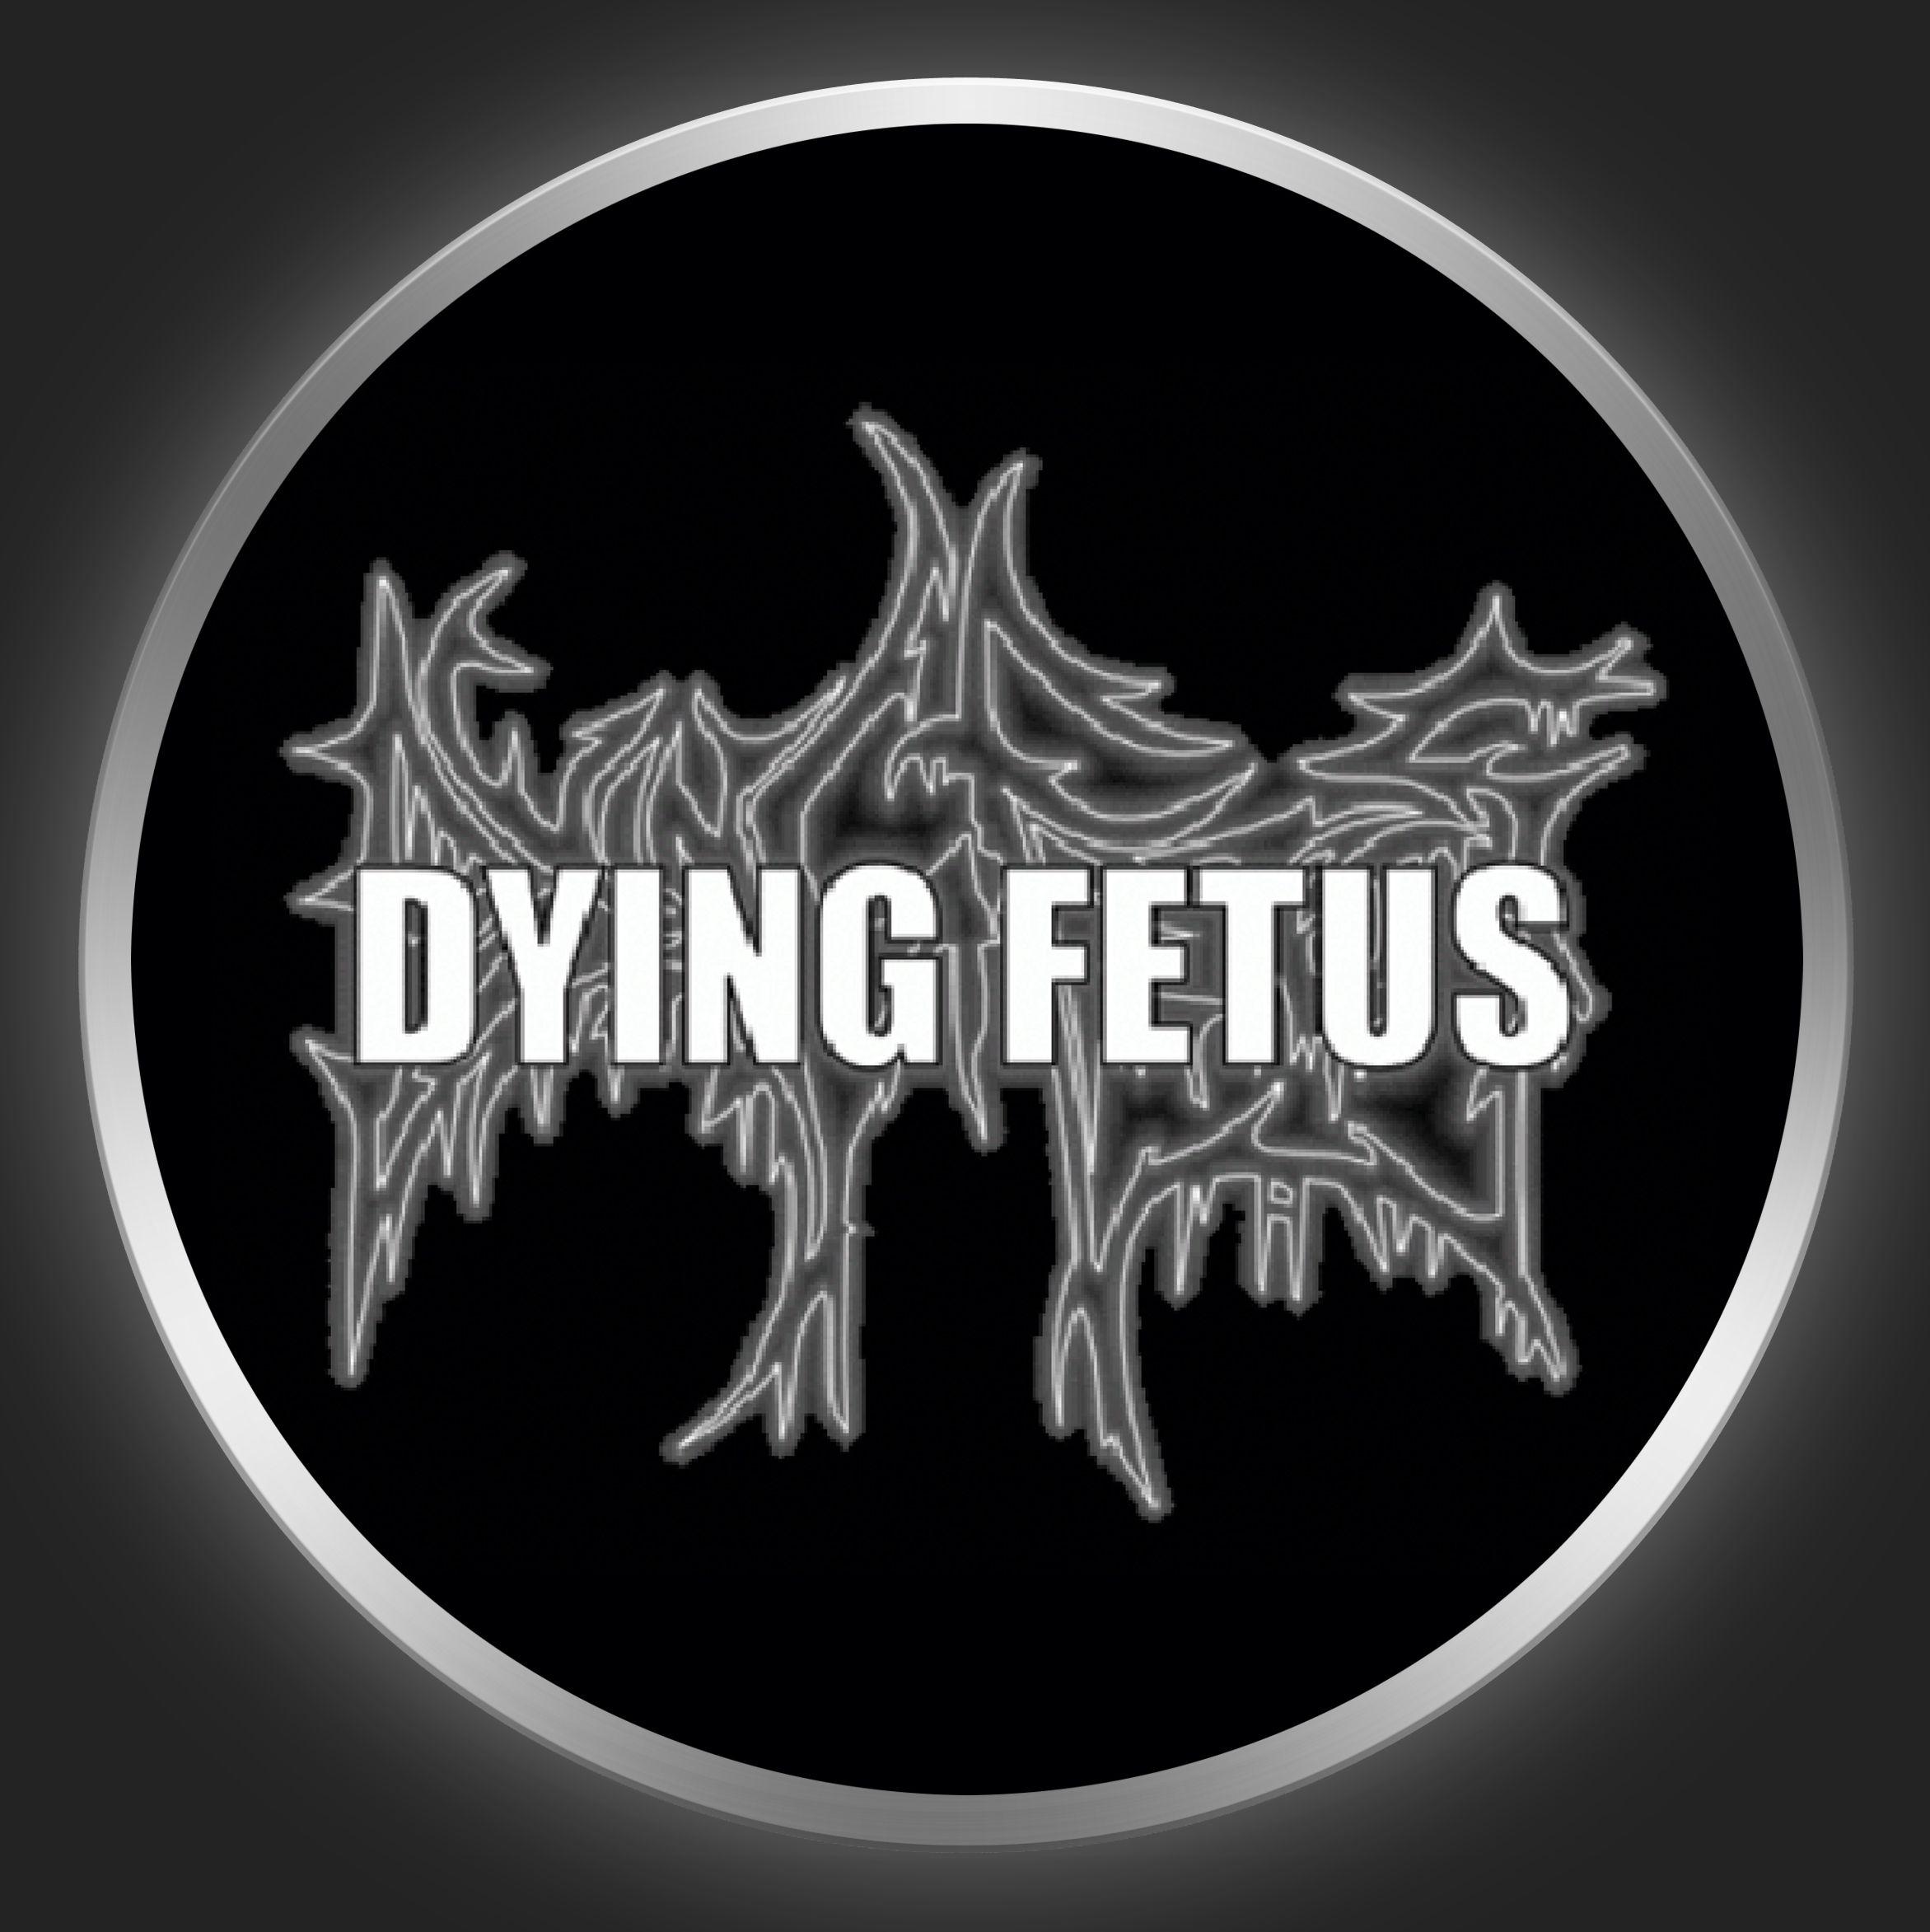 Dying Fetus Logo - DYING FETUS Logo On Black Button